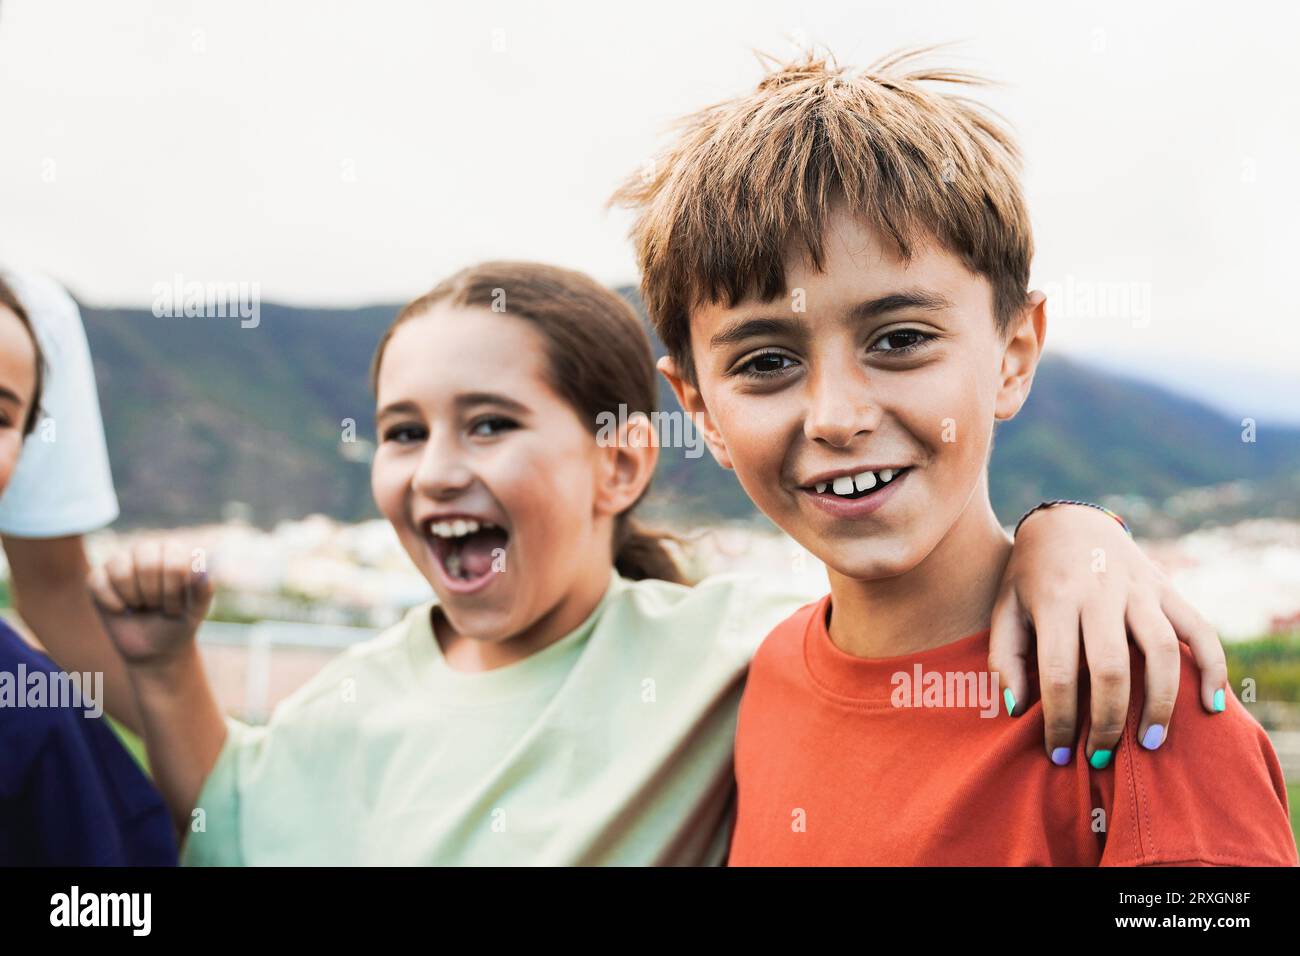 Gruppo di amici bambini che si divertono fuori - bambini latini che festeggiano e abbracciano insieme - amicizia infantile e concetto di stile di vita Foto Stock